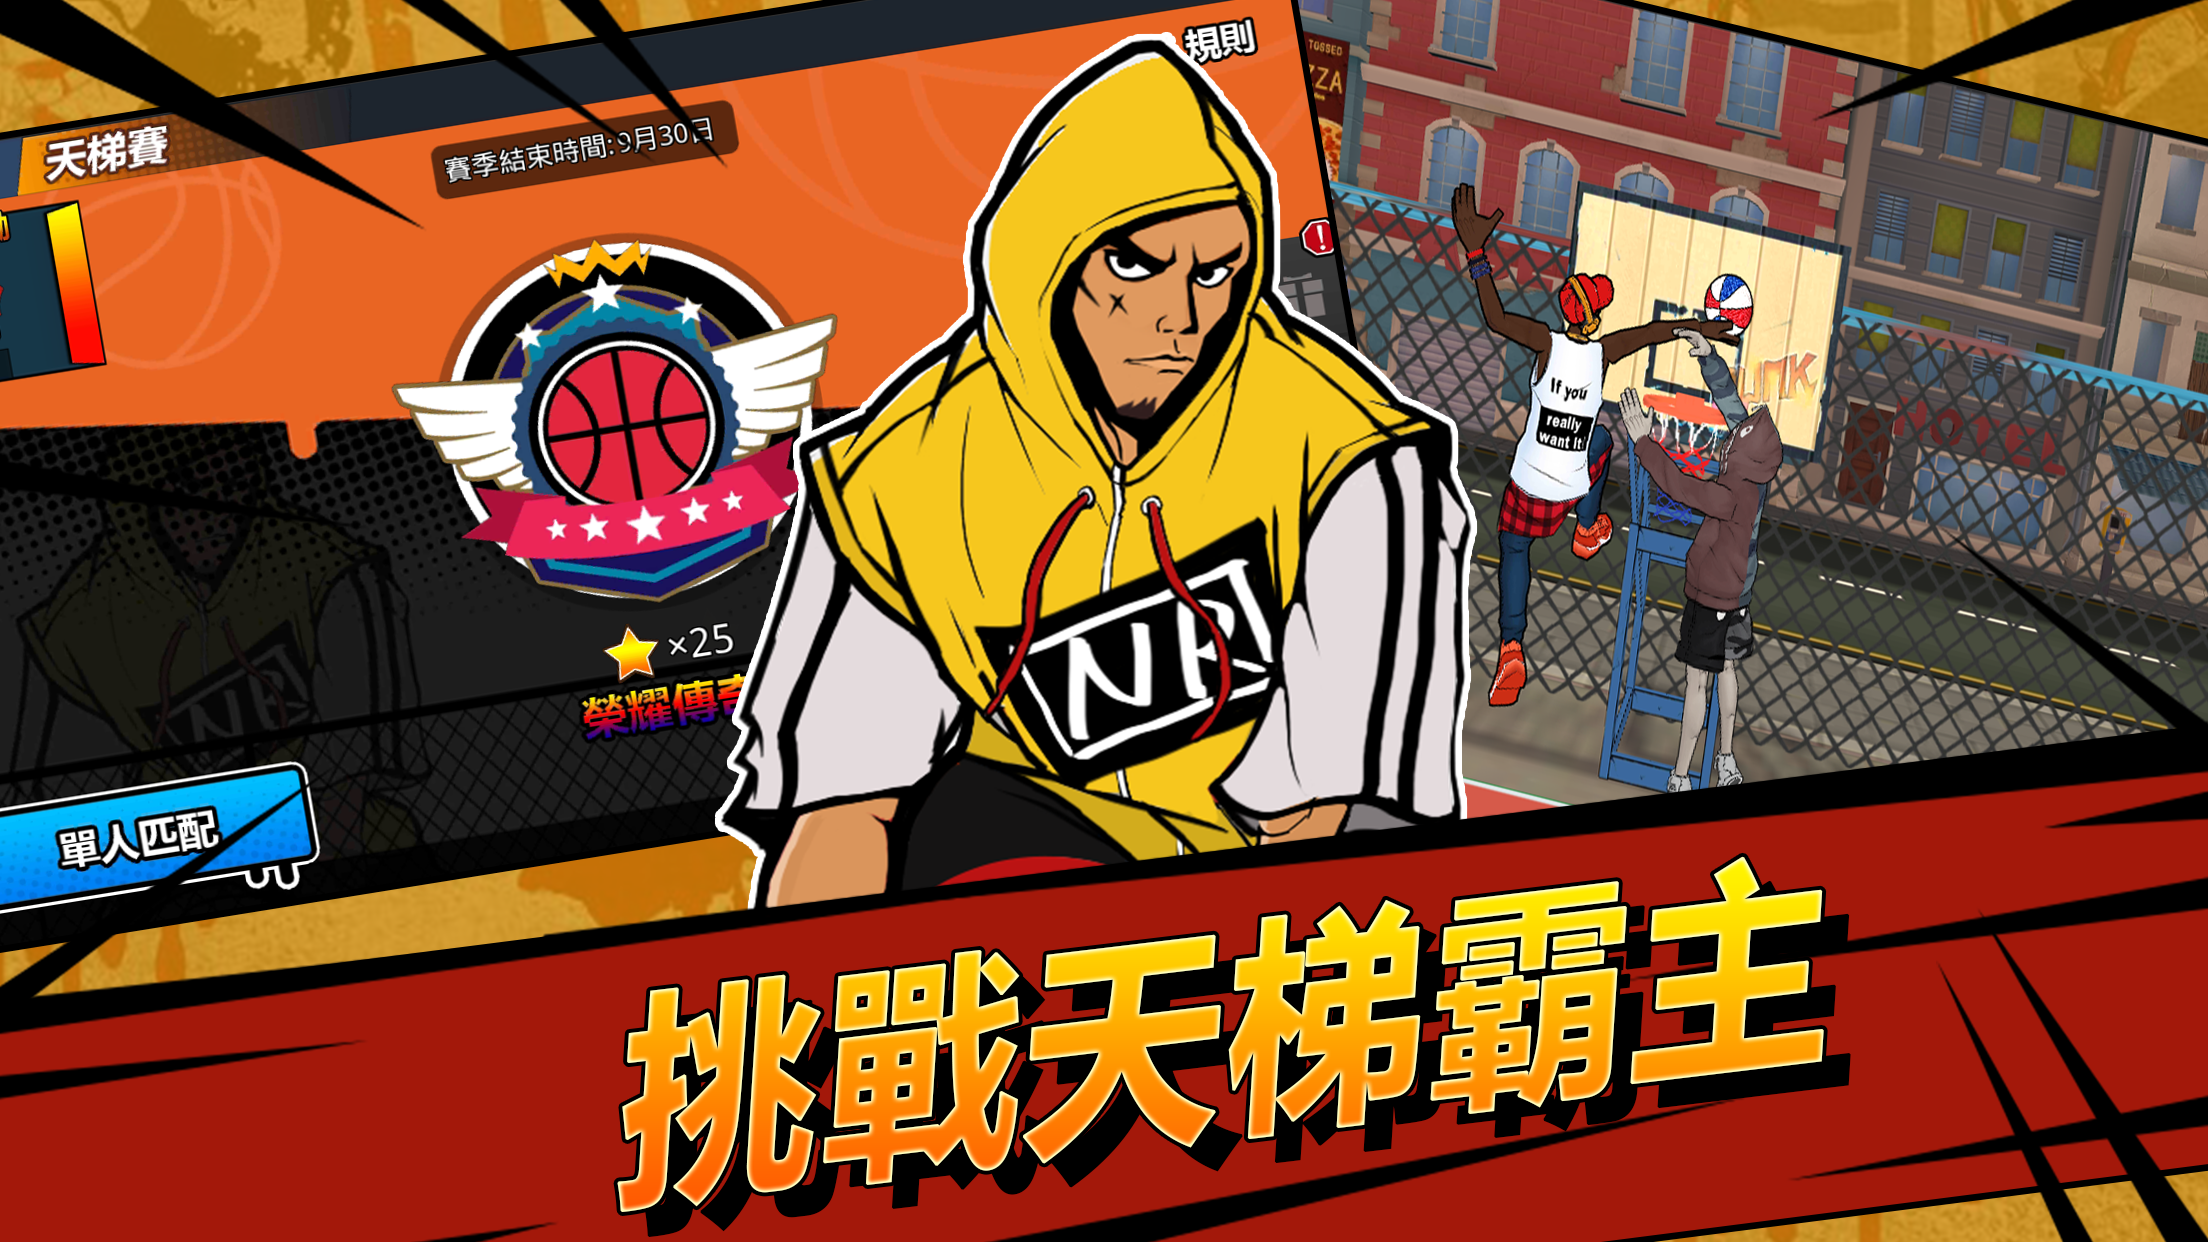 Screenshot 1 of Street Jam: 3on3 Live vs partita di basket 1.6.0.7